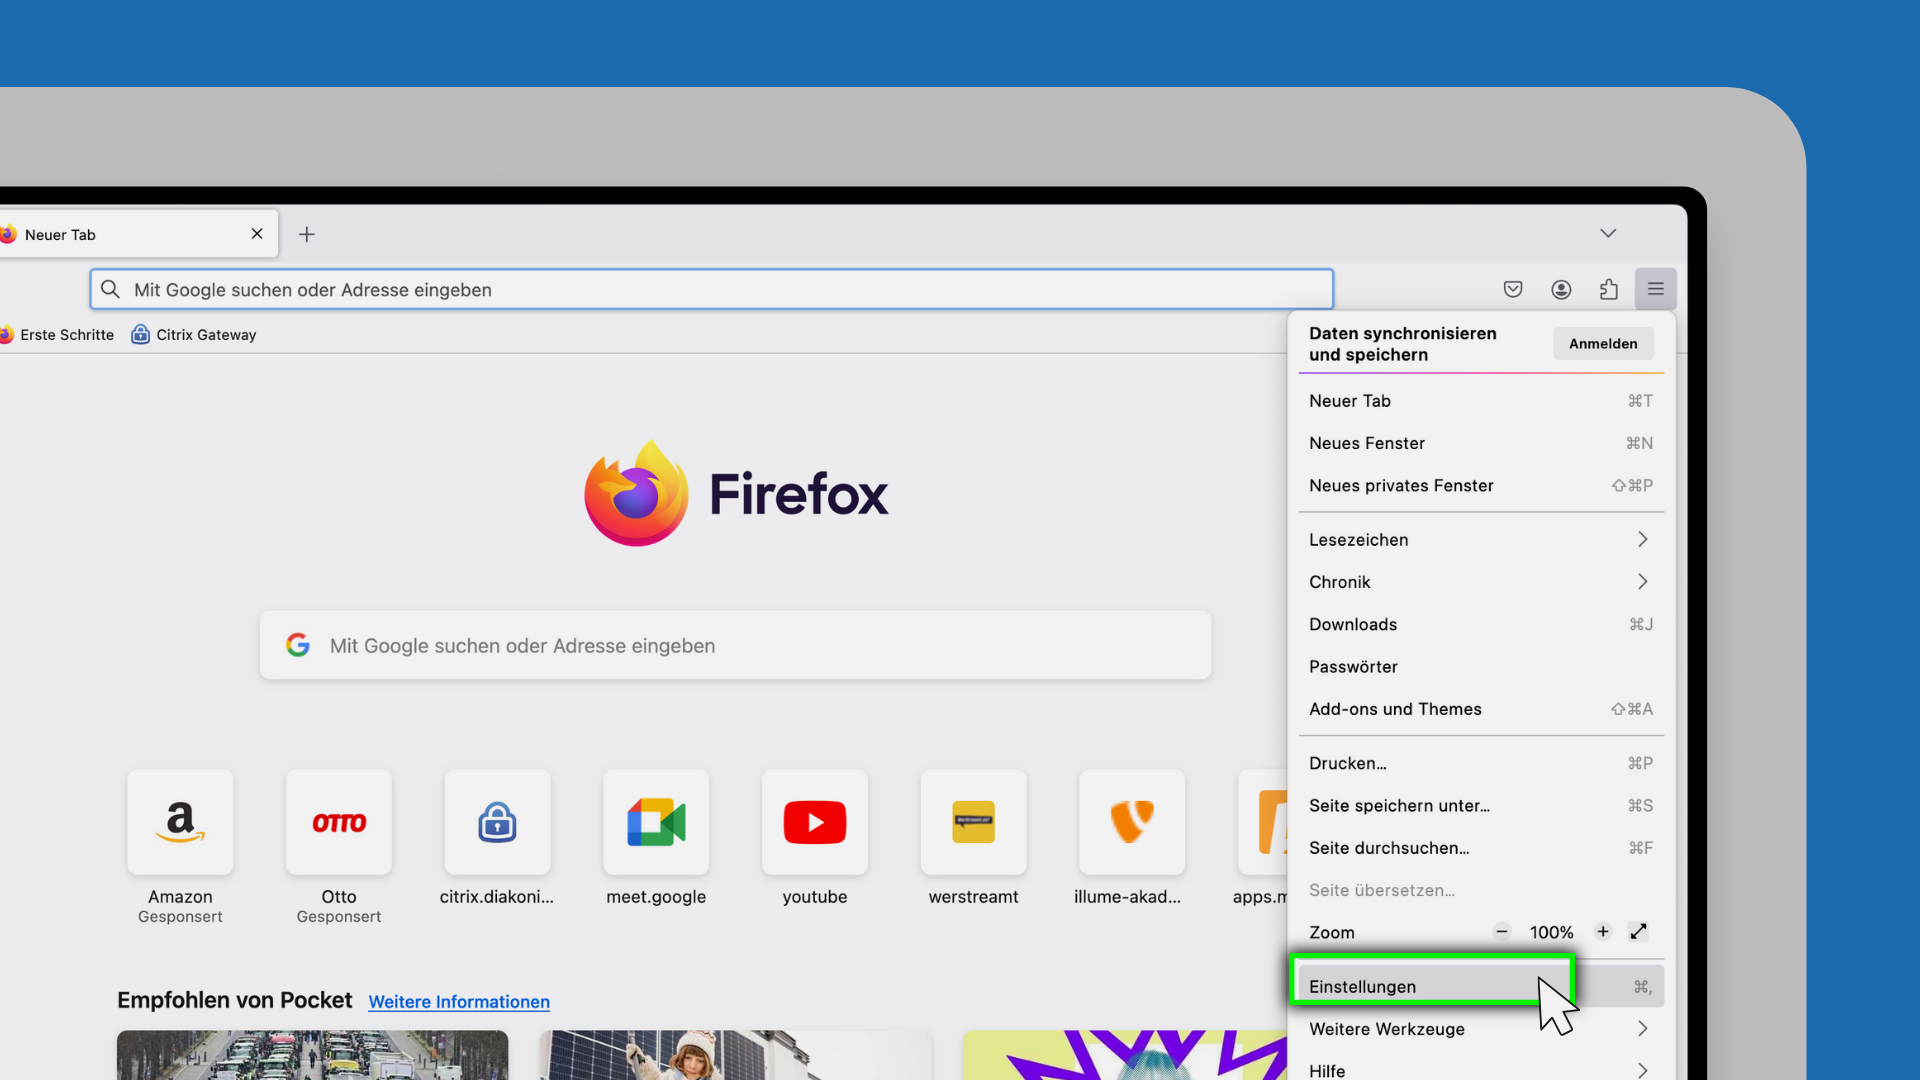 Die vergrößerte Ecke eines Computerbildschirms wird angezeigt. Darauf ist das geöffnete Menü des Firefox-Browsers zu sehen. Der Menüpunkt "Einstellungen" ist ausgewählt.